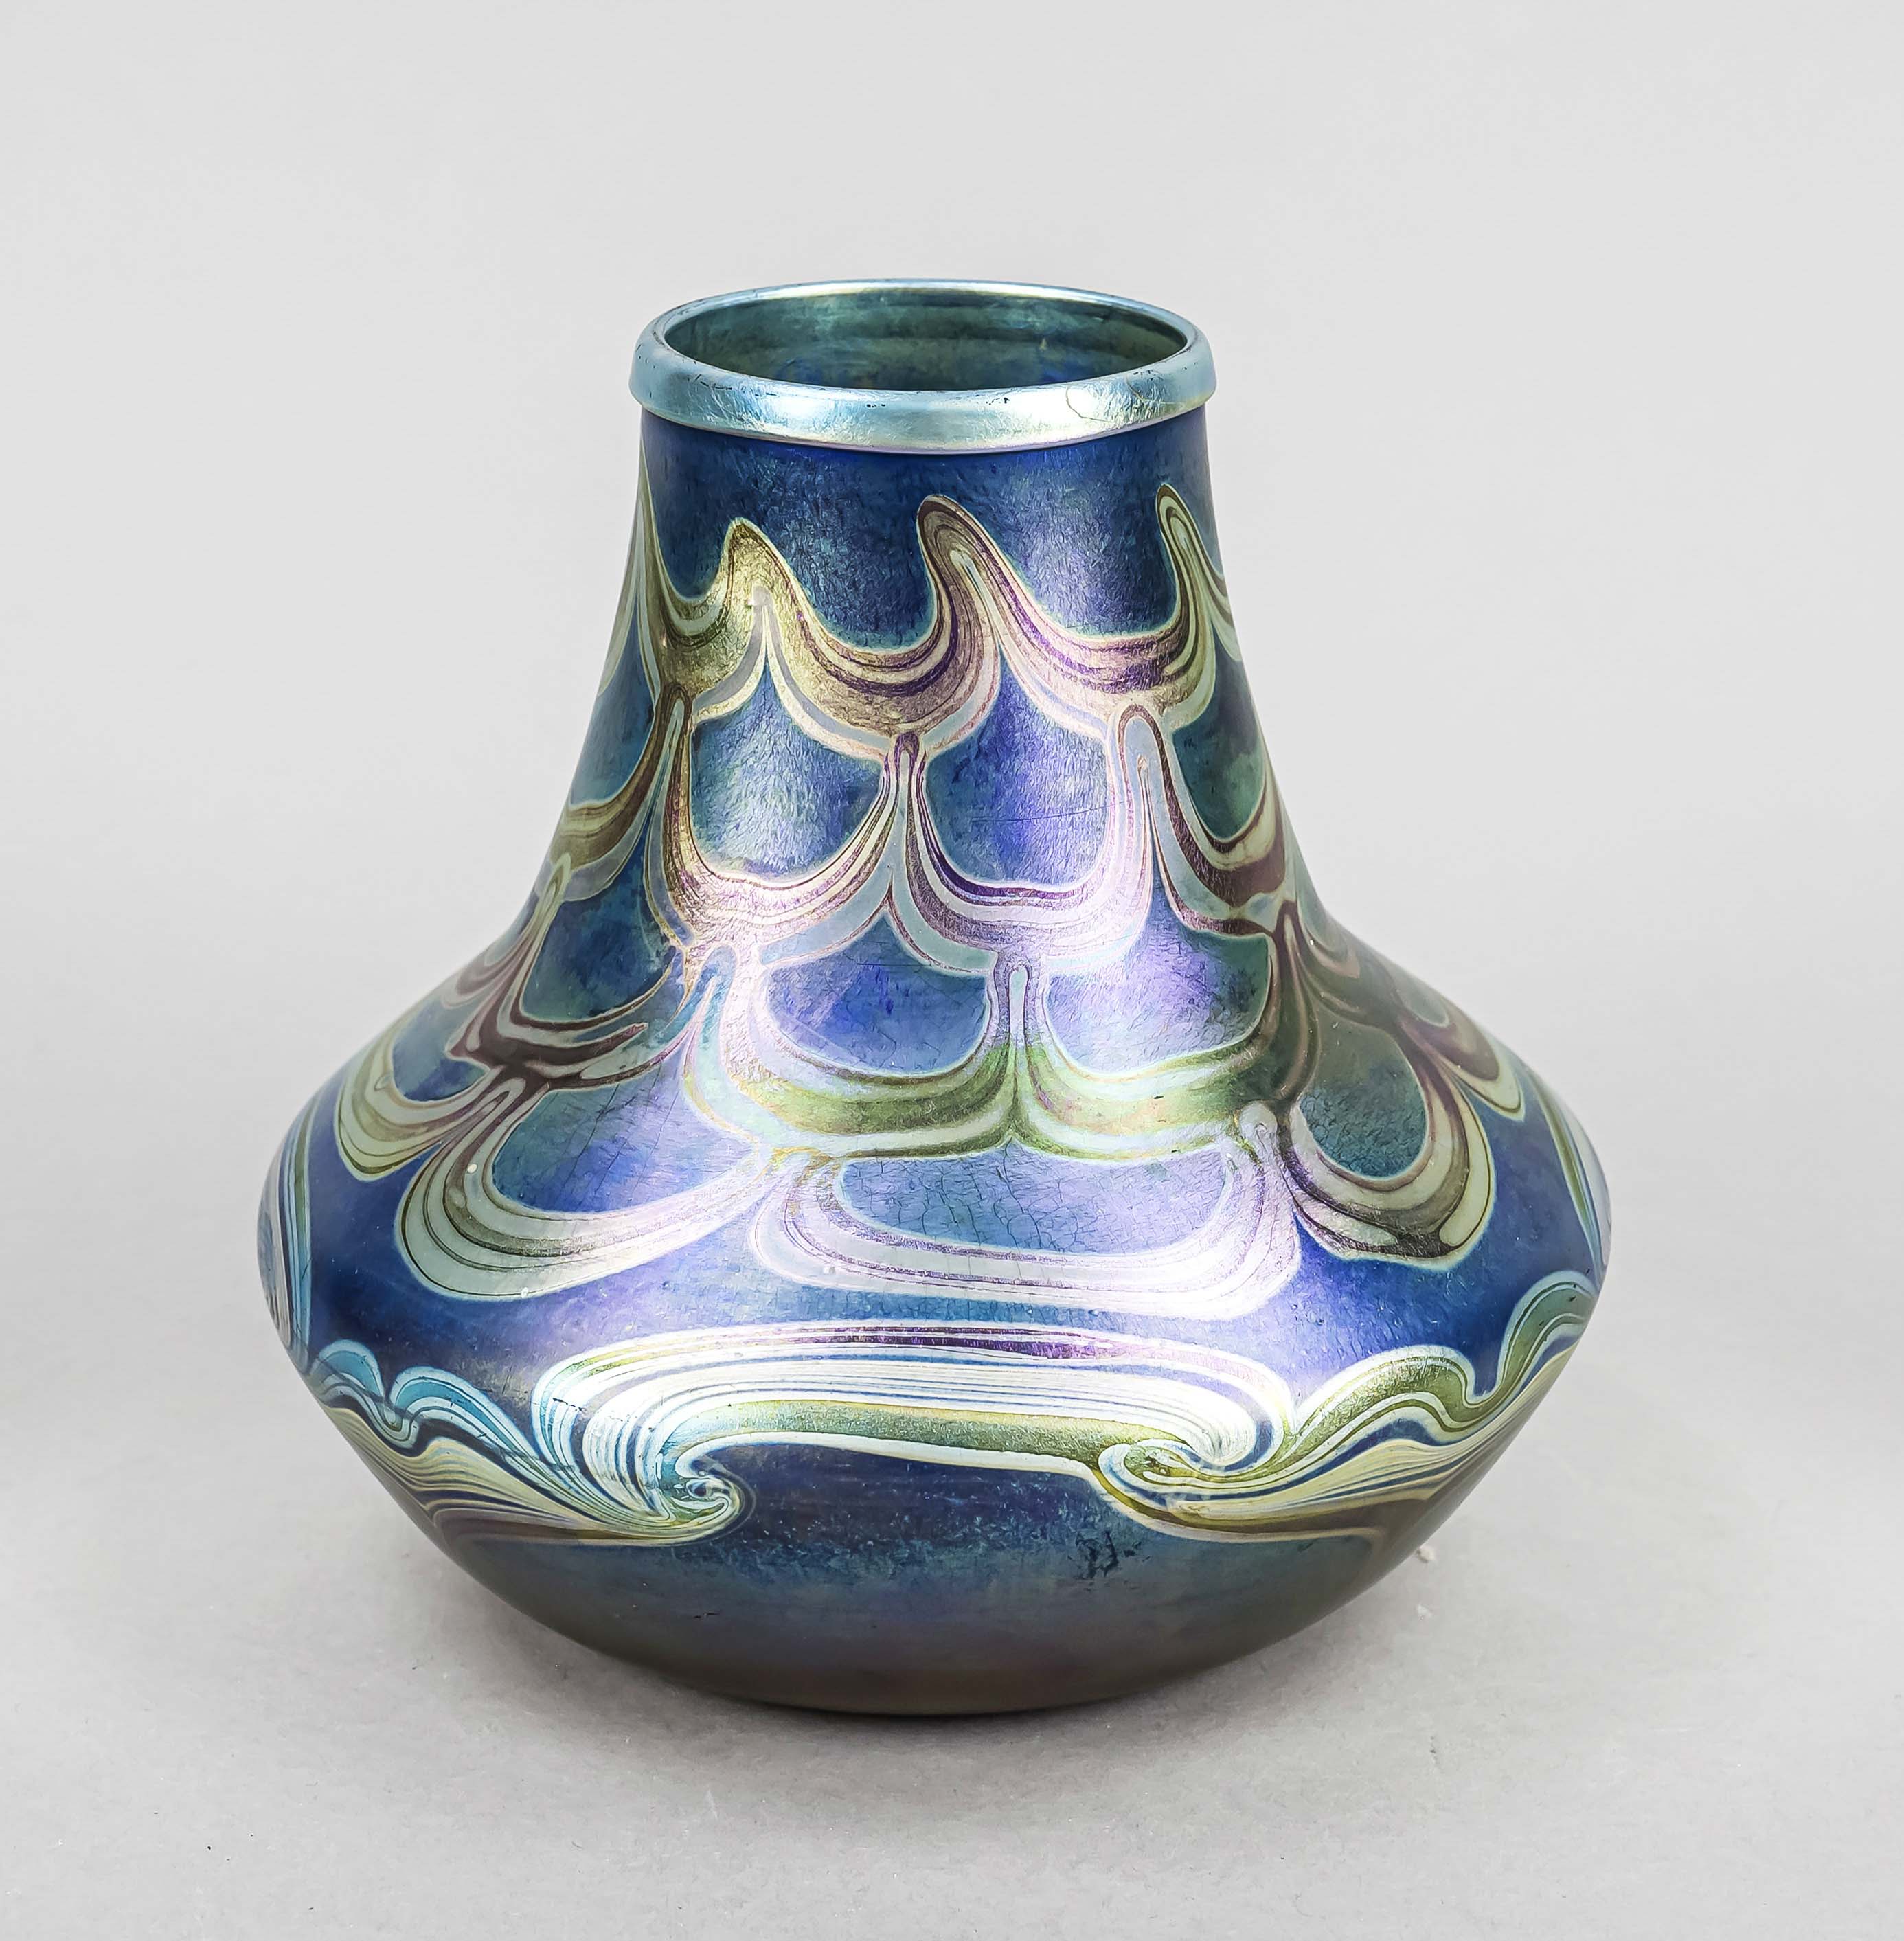 Vase, USA, c. 1900, Tiffany & Co, New York, Louis Comfort Tiffany (1848-1933), round base, bulbous